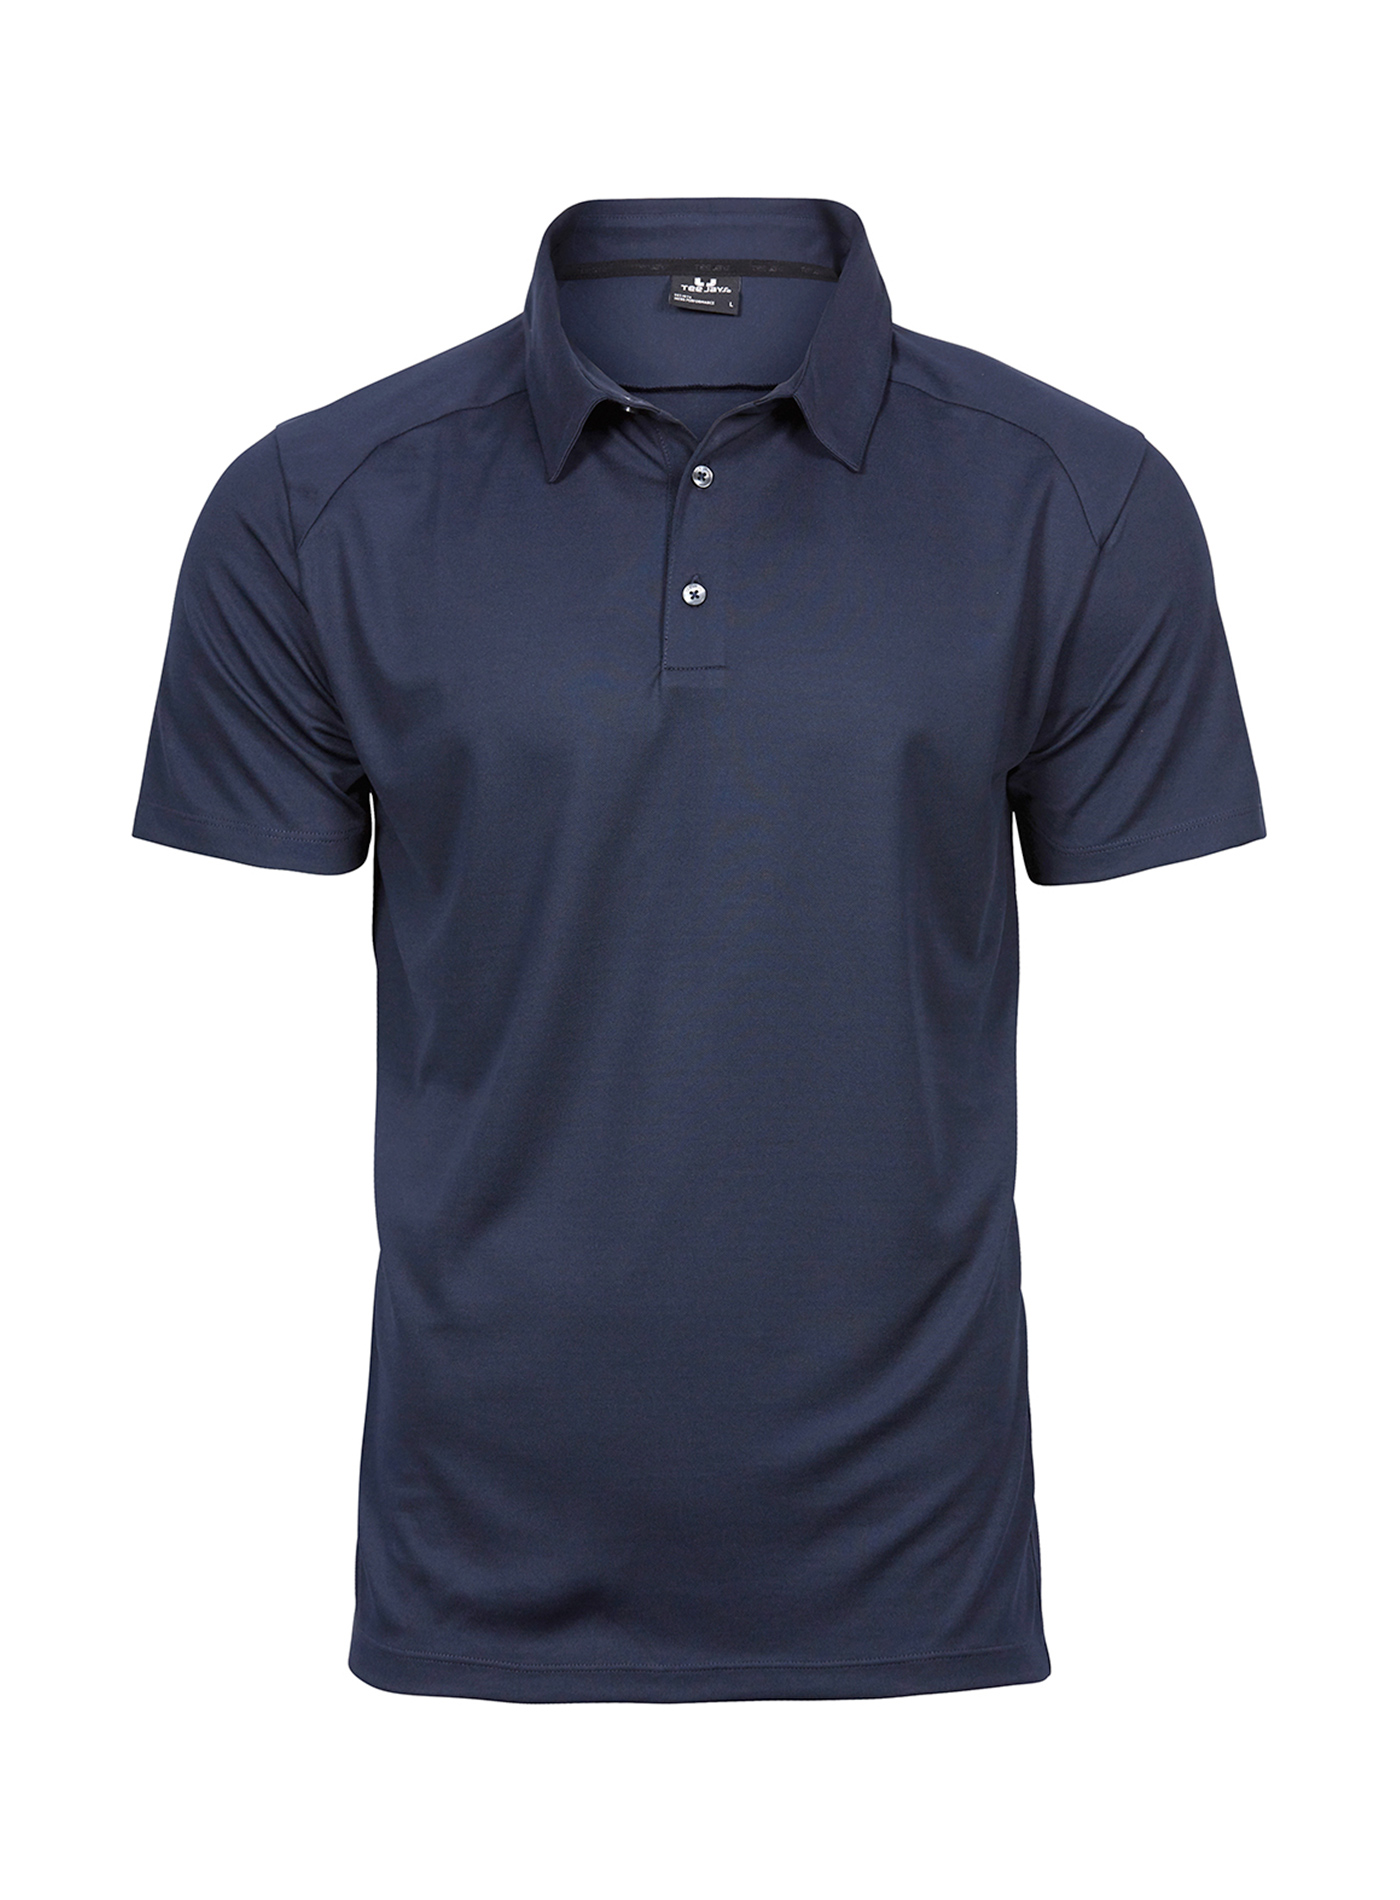 Pánská sportovní polokošile Tee Jays - Cobalt blue/Navy XL